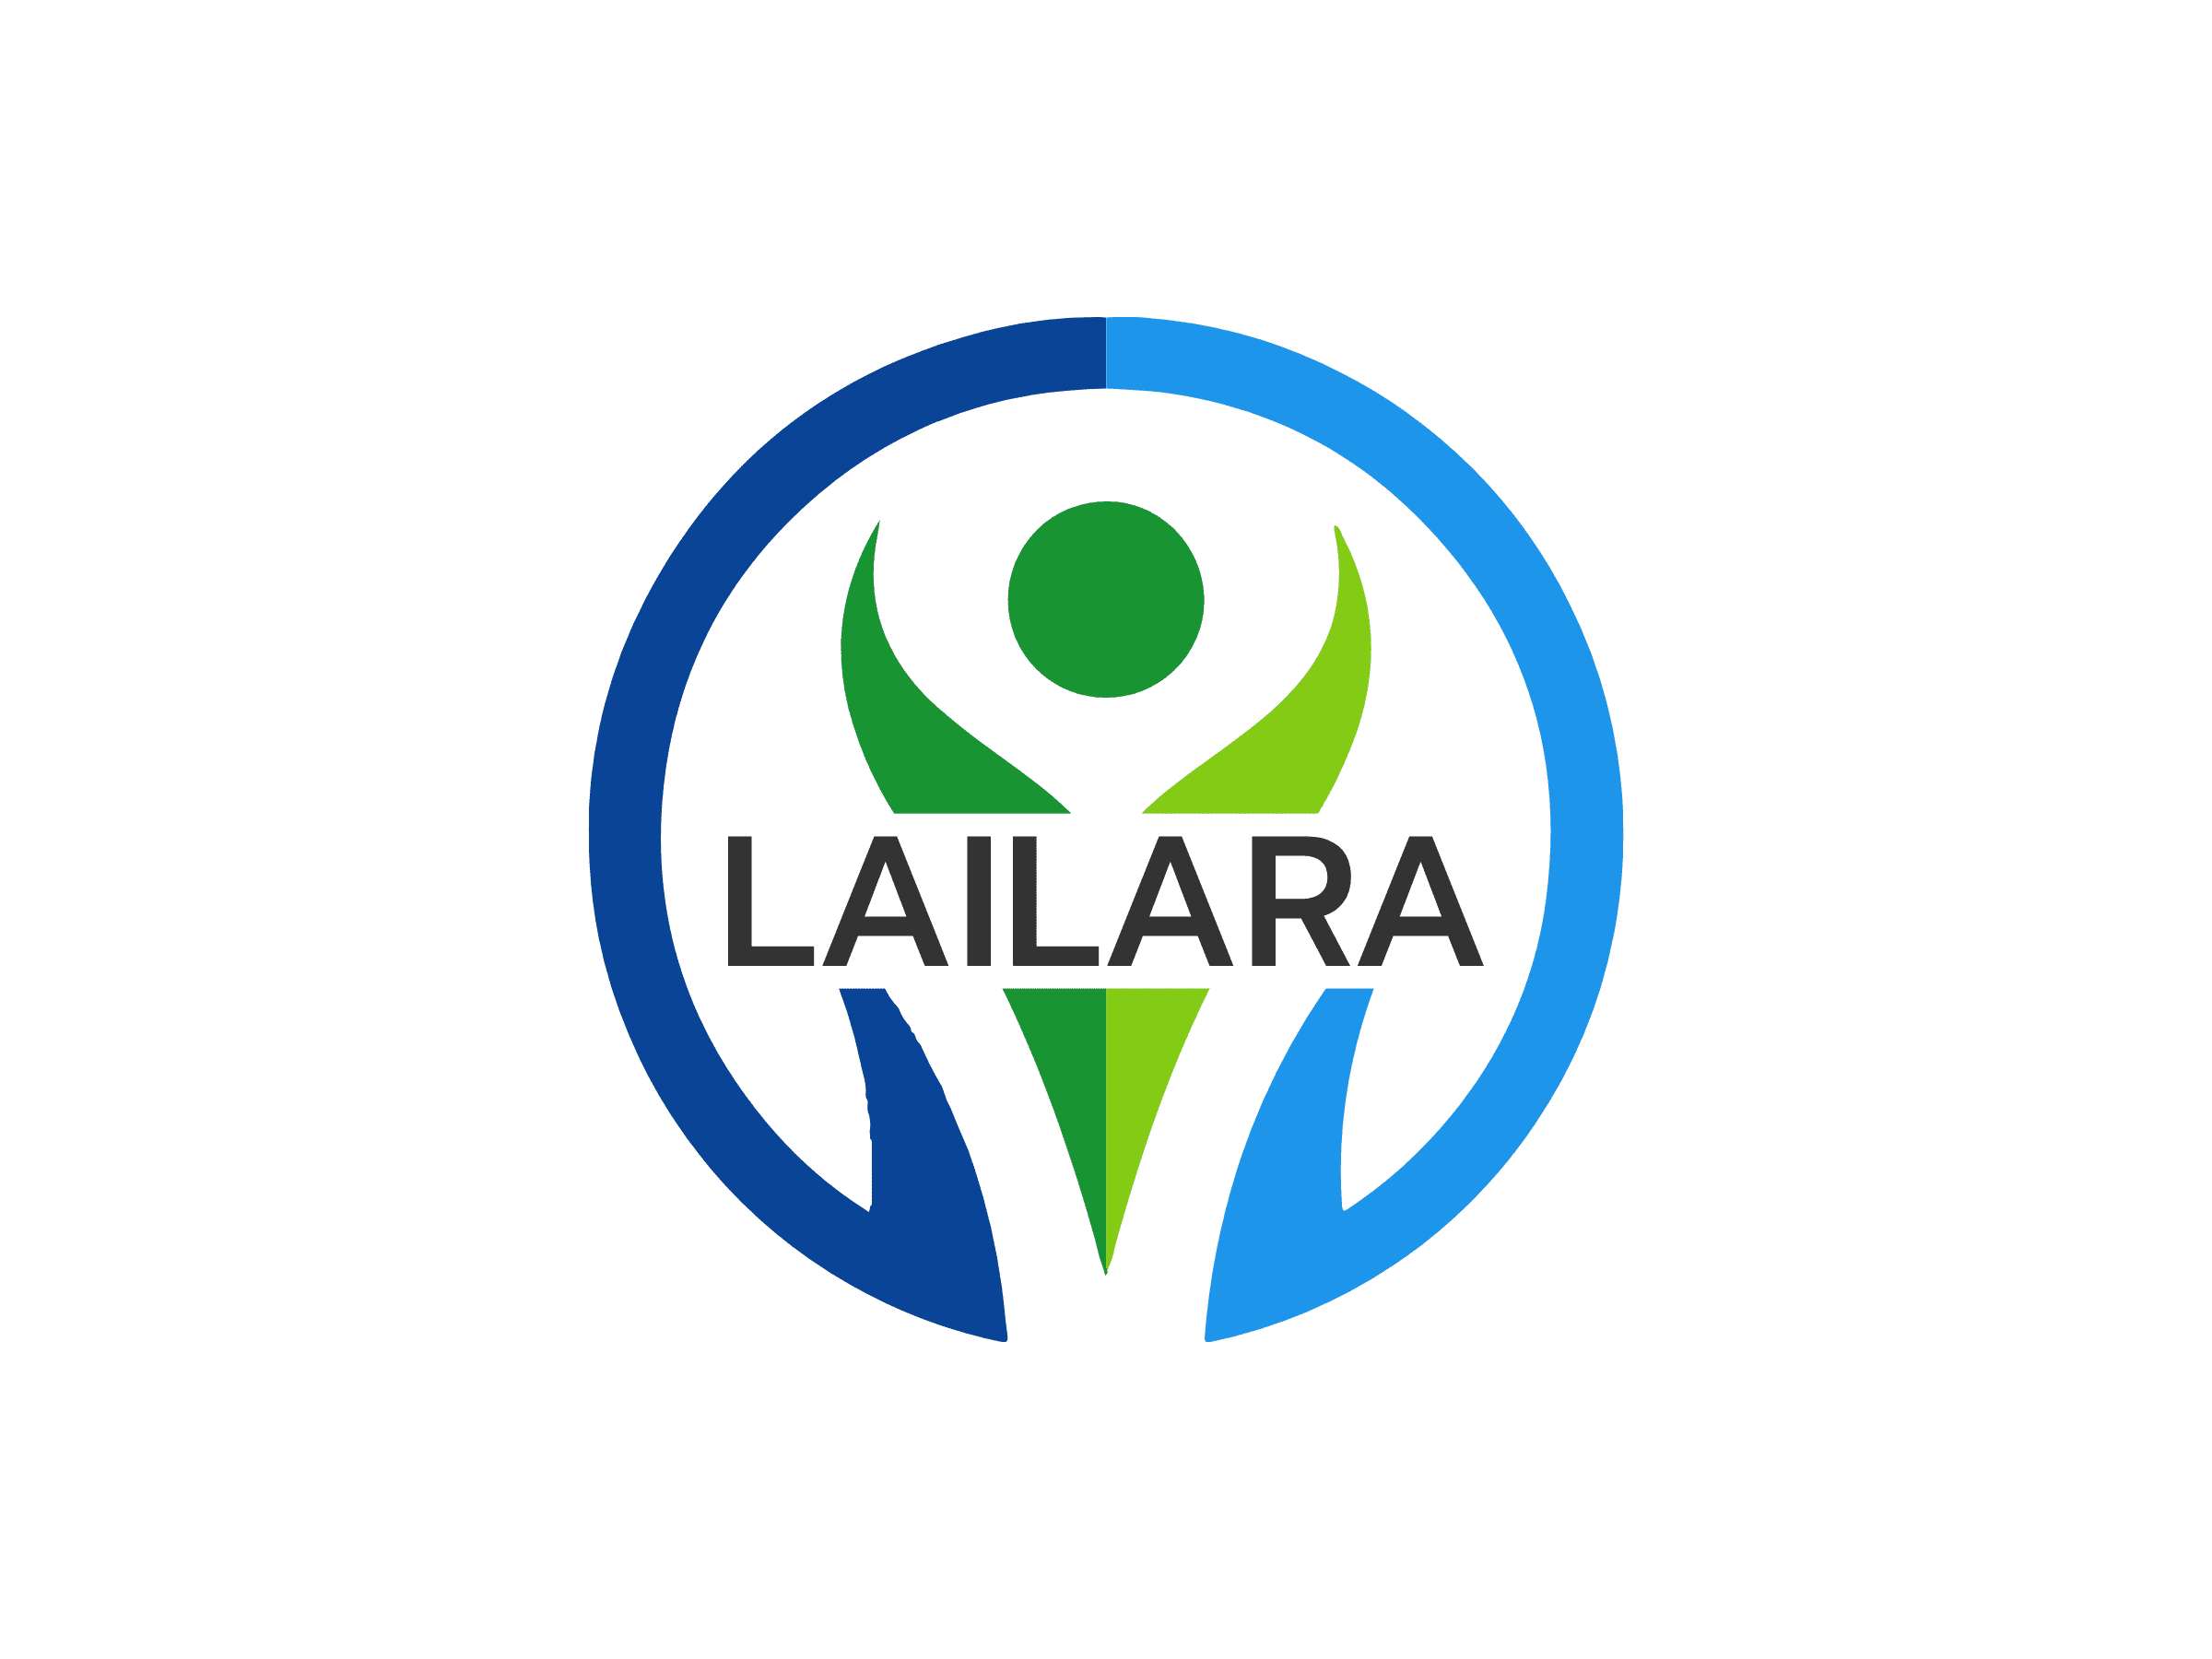 LAILARA Without Slogan 2400x1800-1